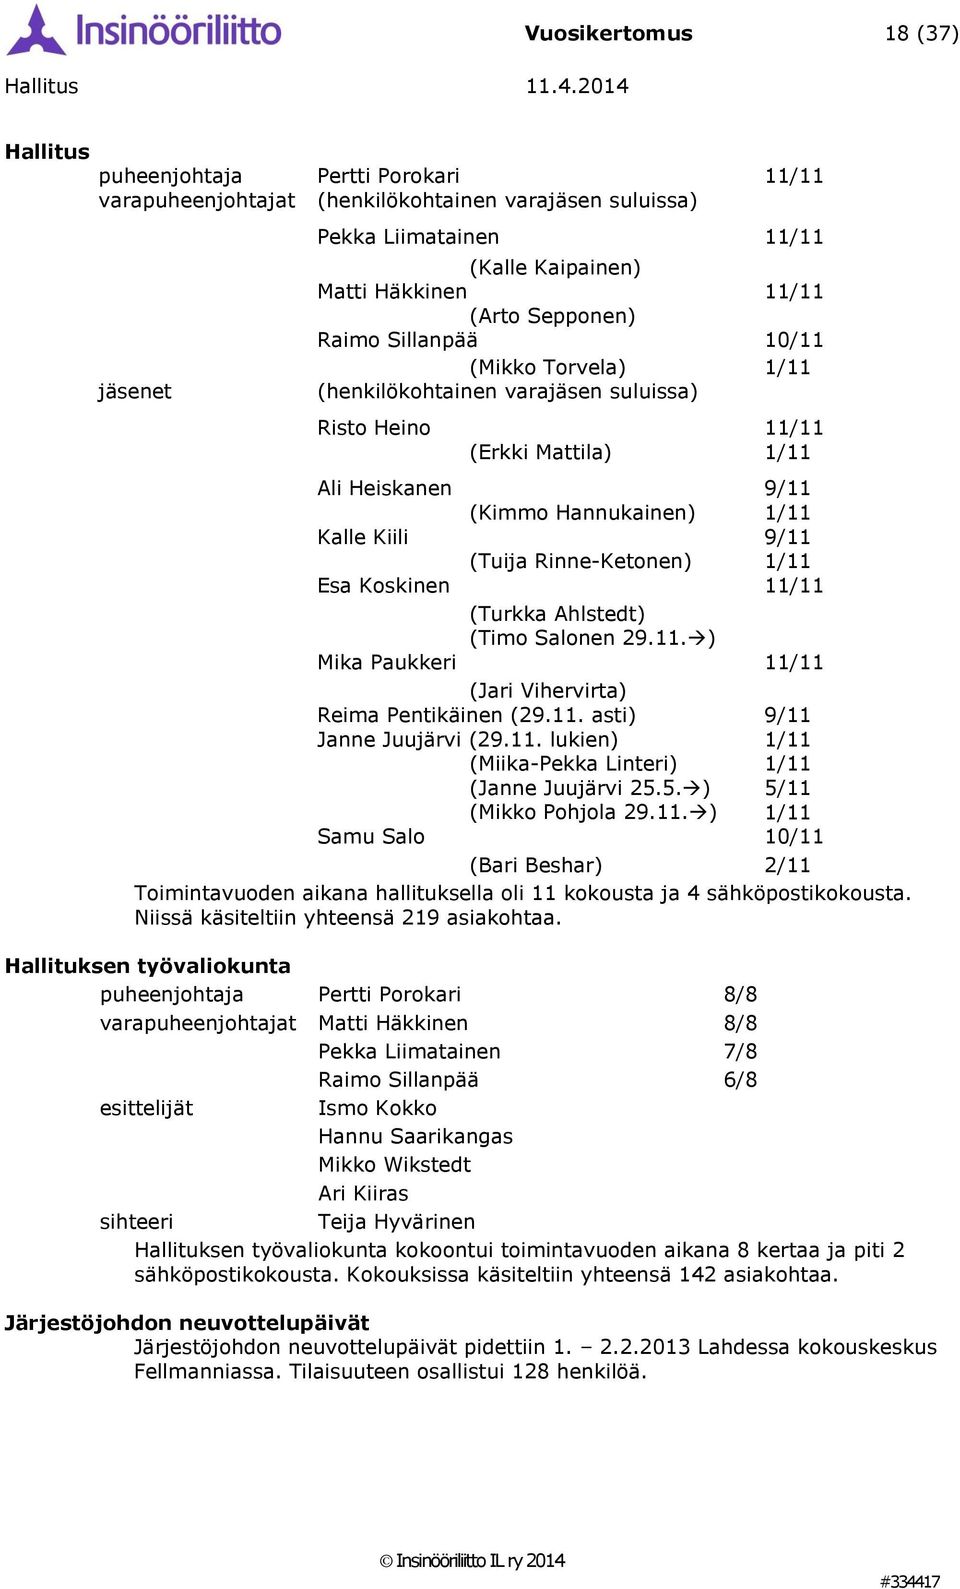 Esa Koskinen 11/11 (Turkka Ahlstedt) (Timo Salonen 29.11. ) Mika Paukkeri 11/11 (Jari Vihervirta) Reima Pentikäinen (29.11. asti) 9/11 Janne Juujärvi (29.11. lukien) (Miika-Pekka Linteri) (Janne Juujärvi 25.